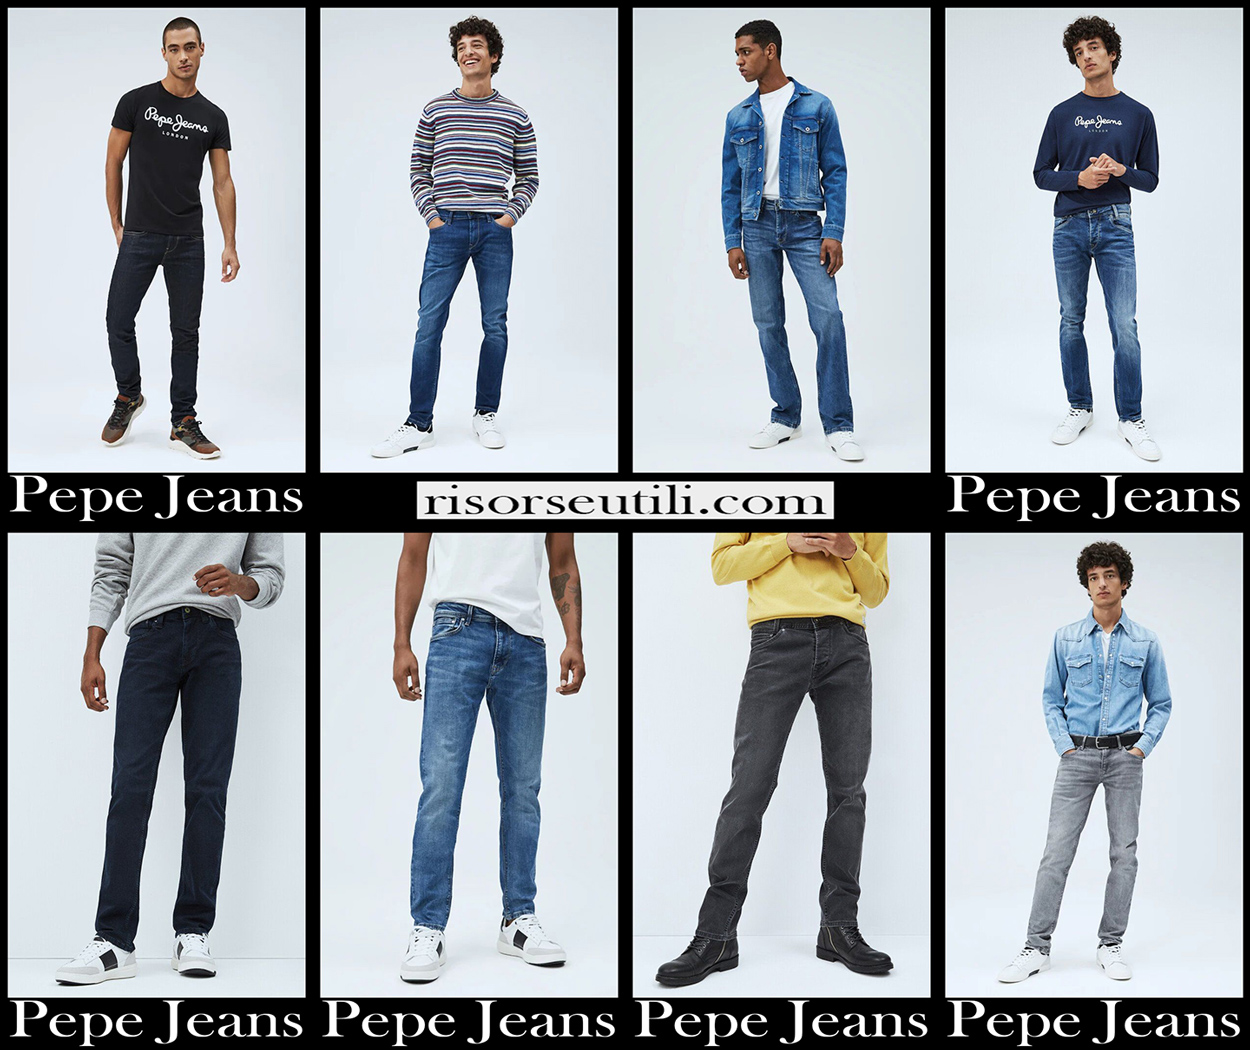 Участники Нью джинс. New Jeans участники. Нью джинс карточки. Тест Нью джинс.